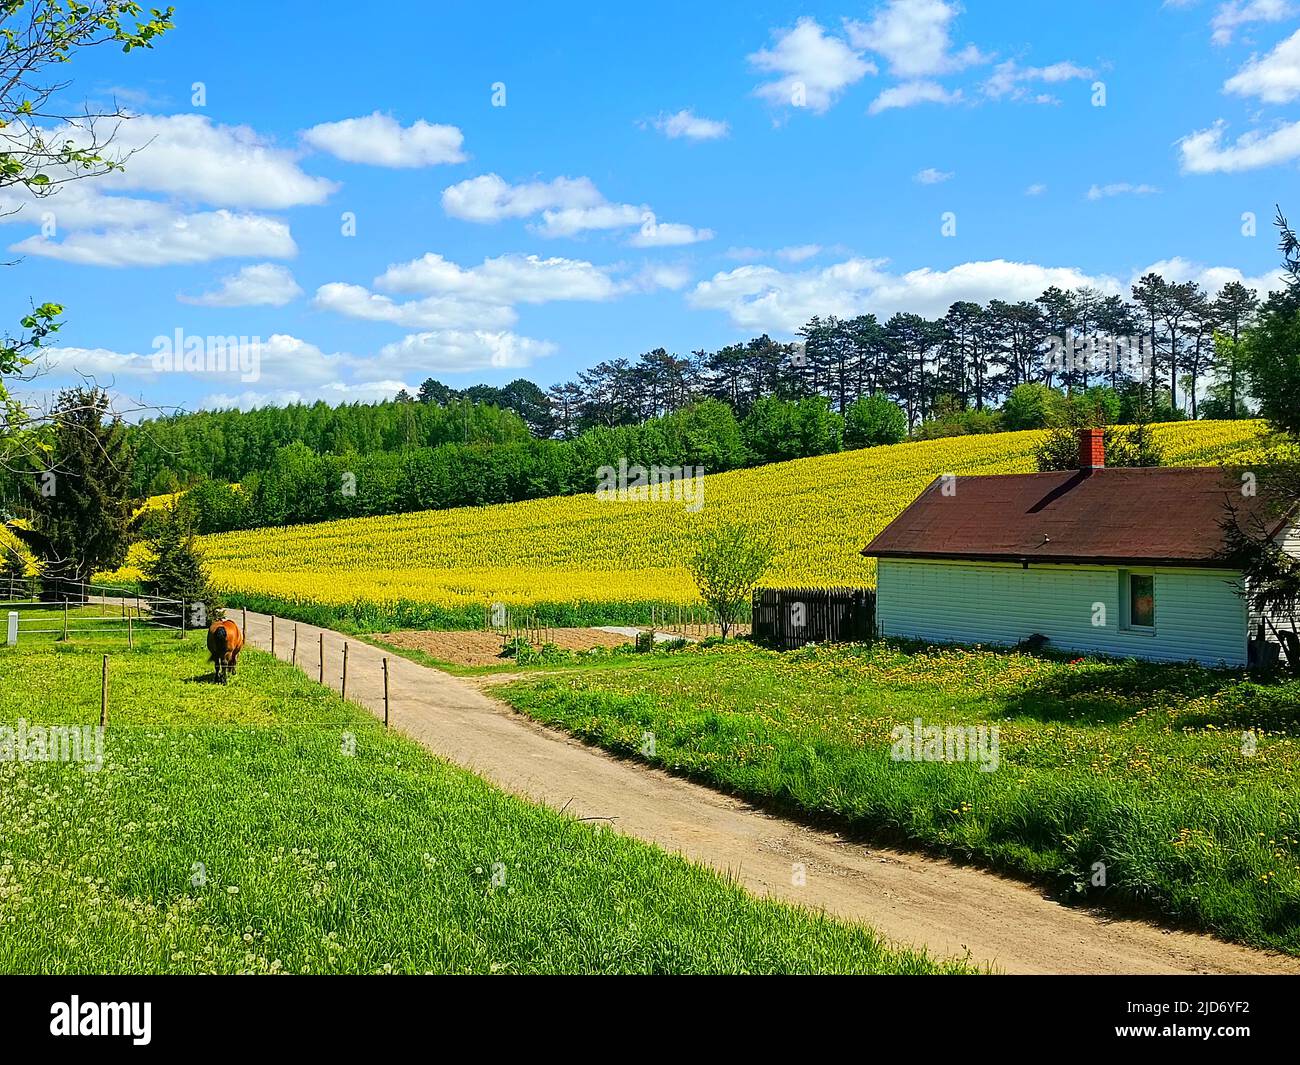 Camino rural polaco, colza amarilla, campo de canola o colza y granja de caballos en el verano, paisaje. Lublin, Stasin, Polonia Foto de stock